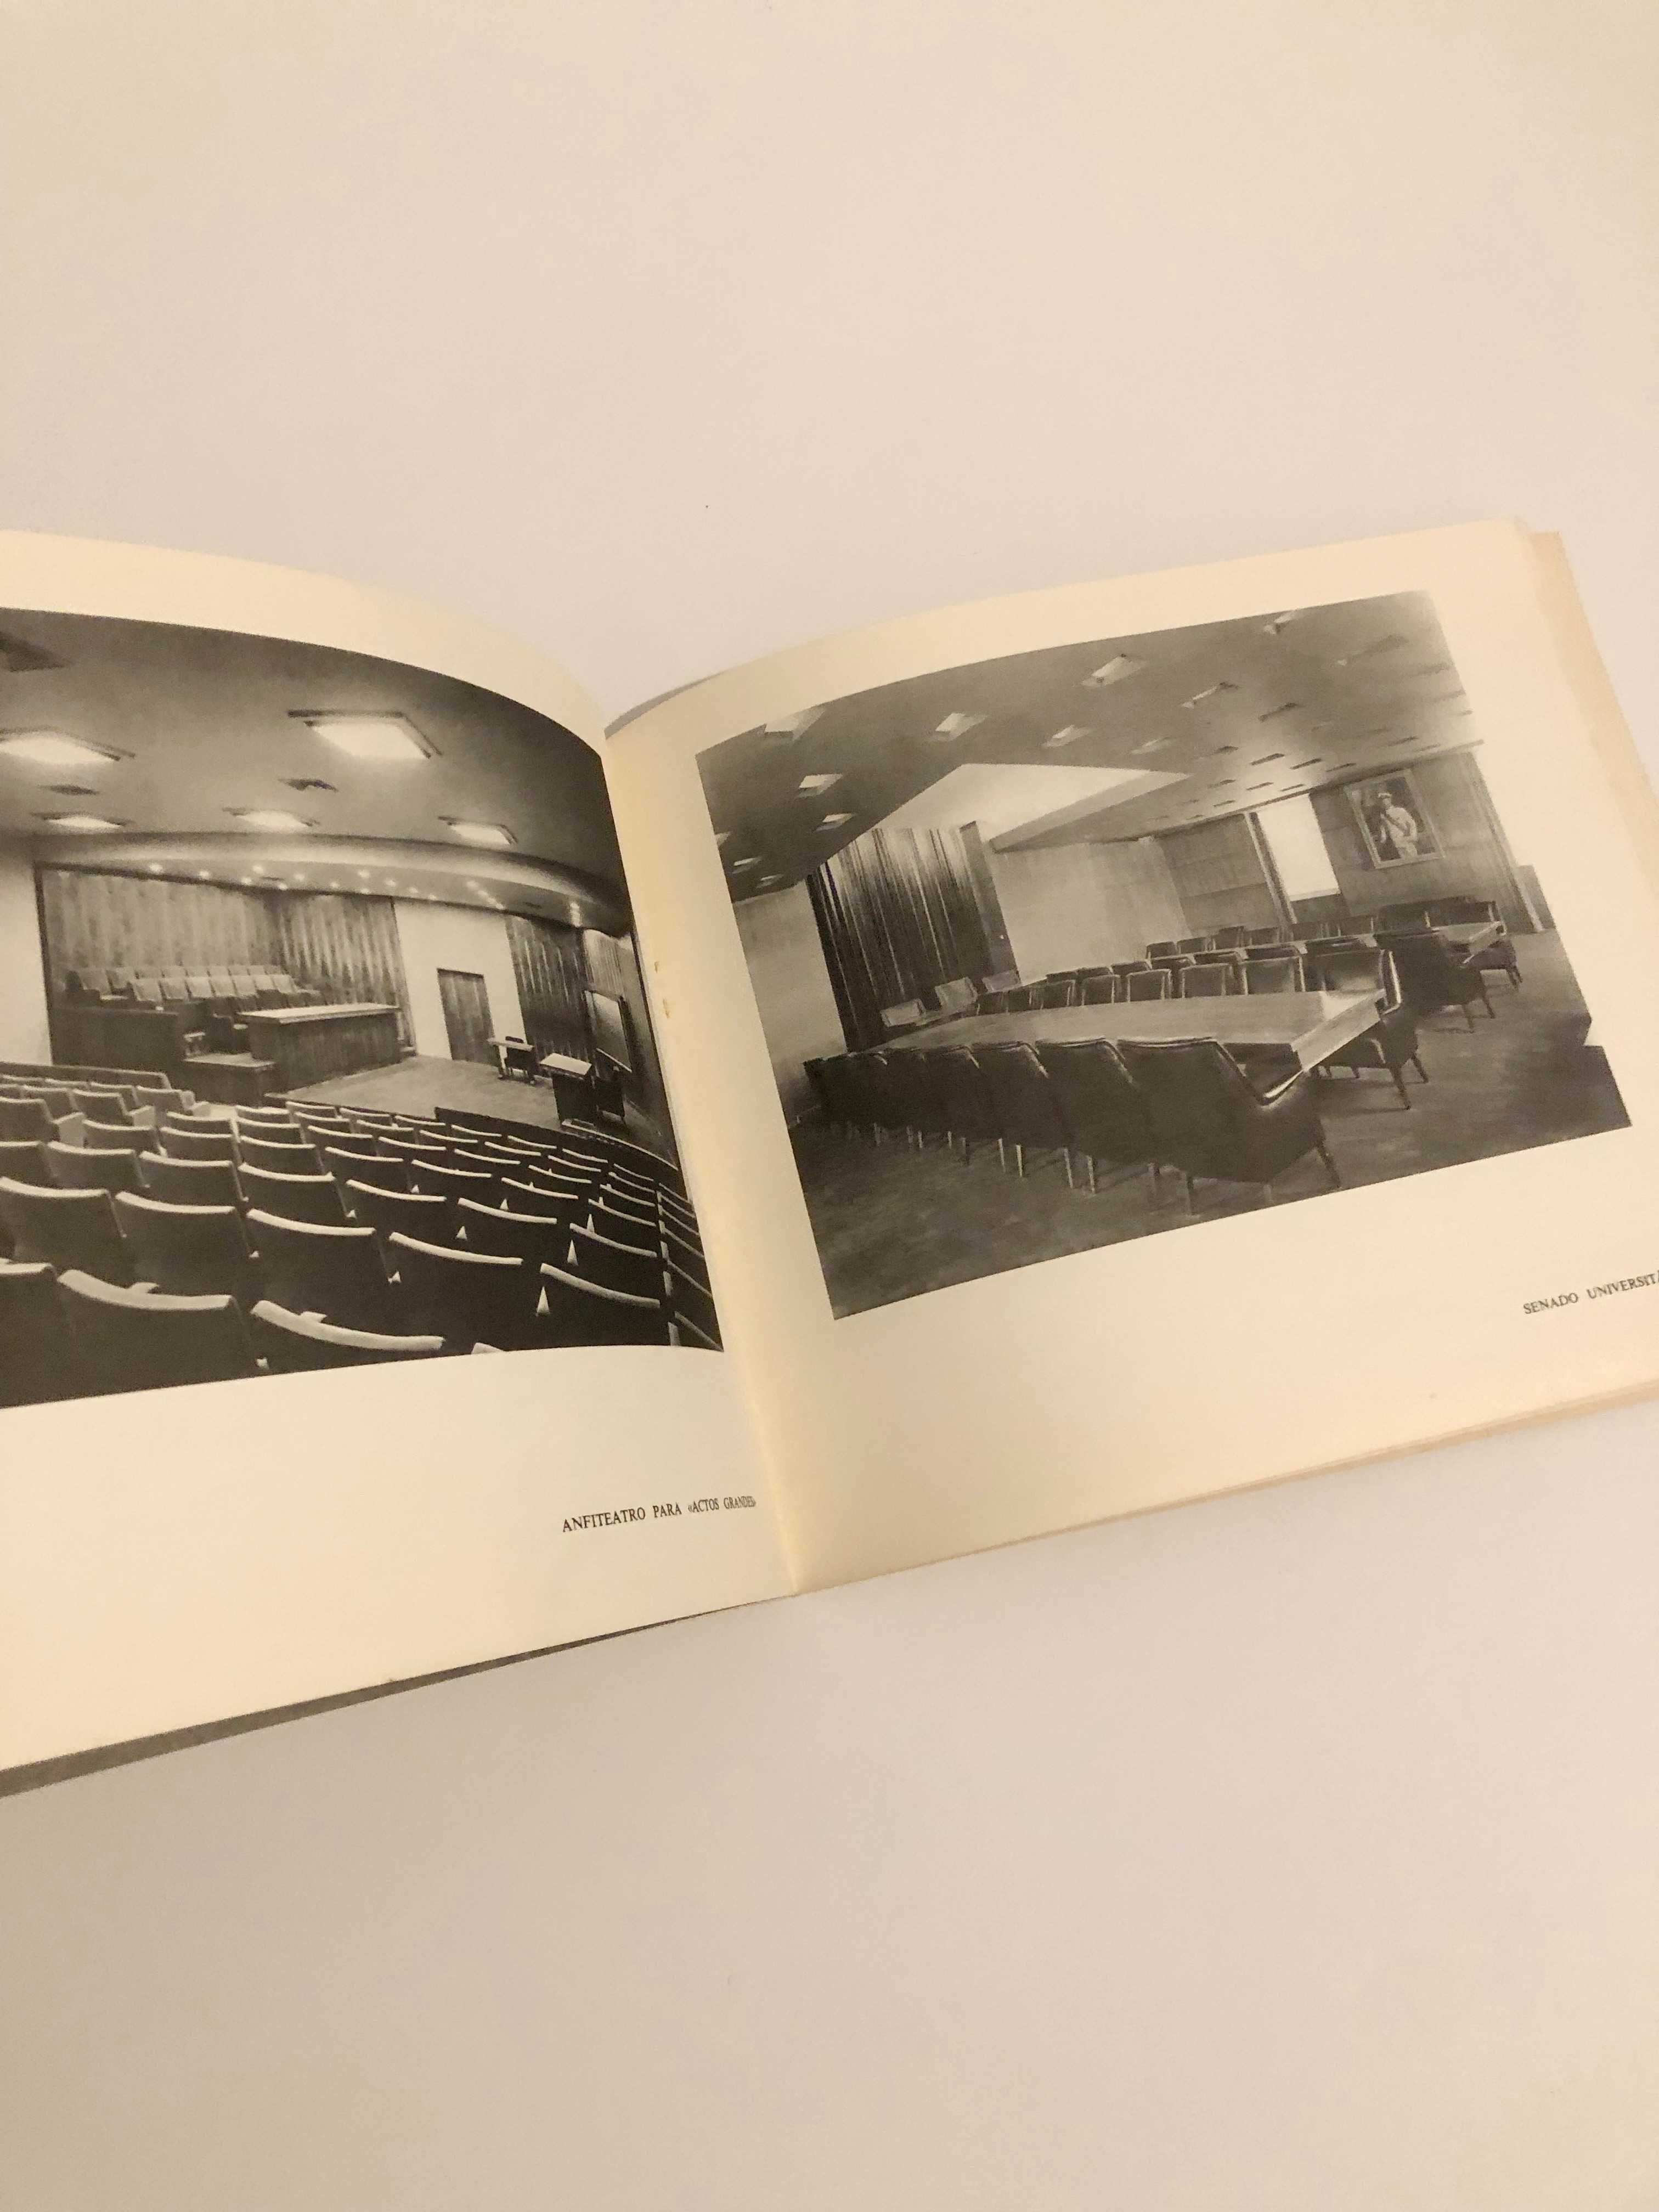 Catálogo / Brochura inauguração reitoria universidade de Lisboa 1961